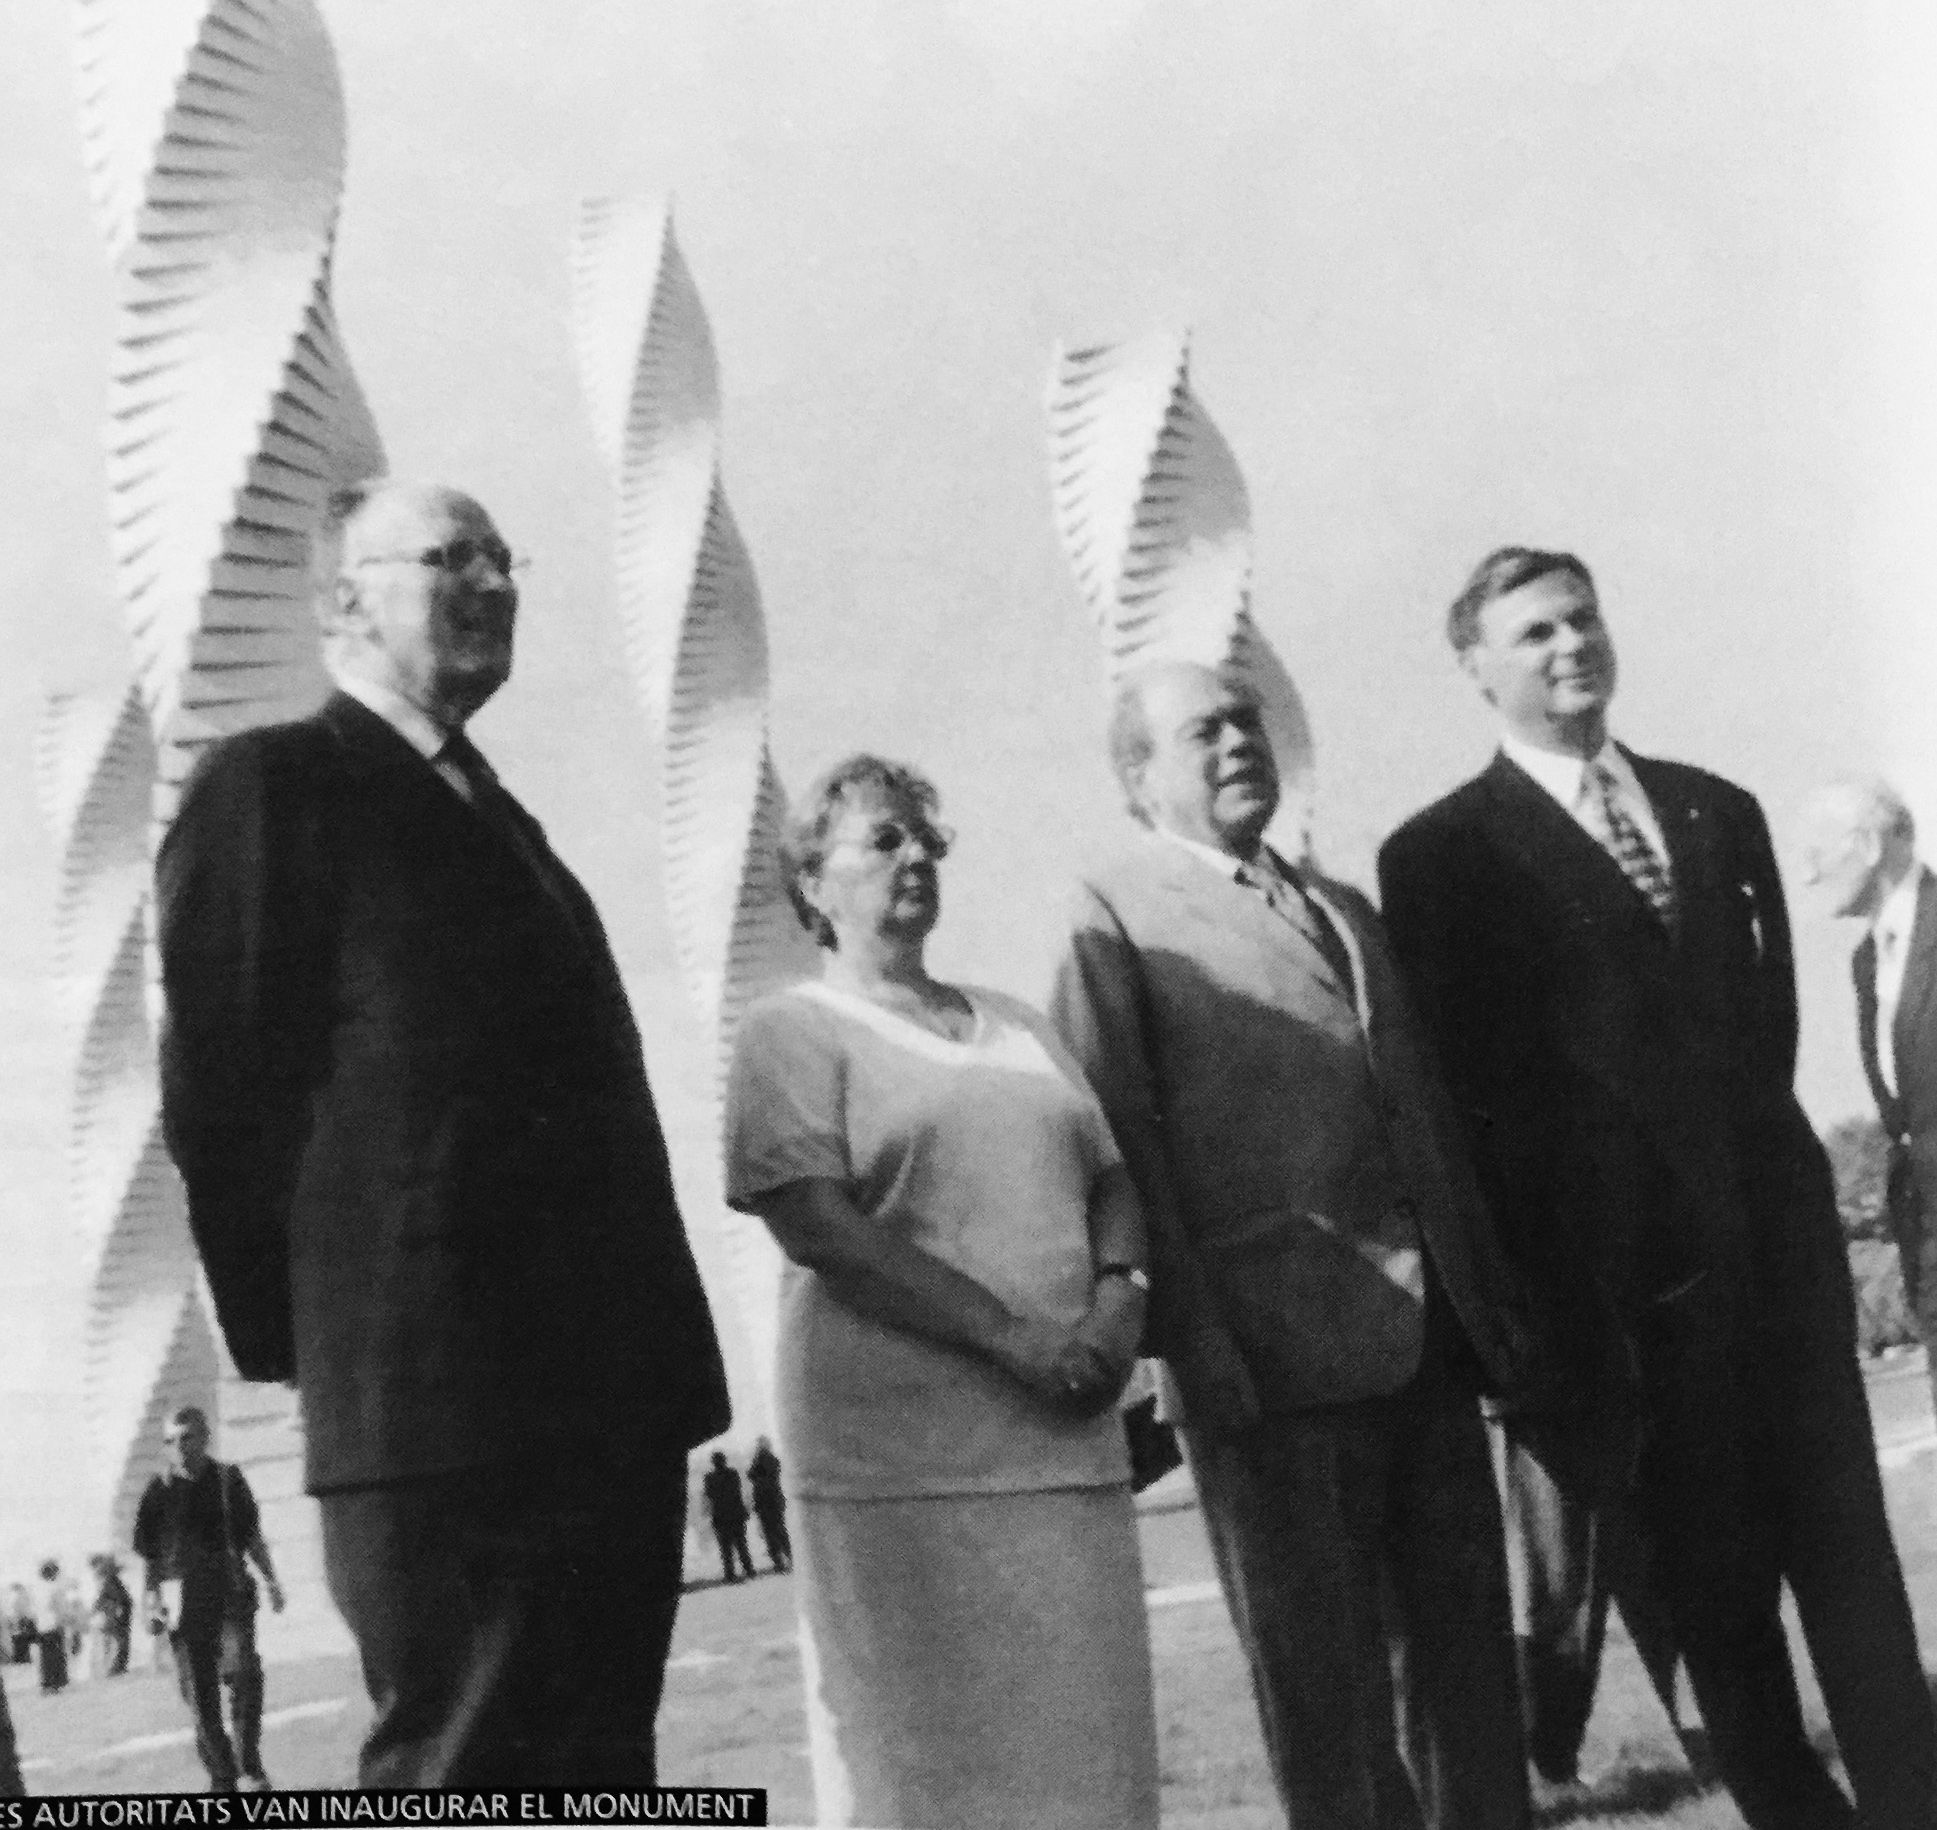 Jordi Pujol, Cristina Real i altres autoritats durant la inauguració de les Columnes d'Alfaro a la UAB l’any 1999. FOTO: Arxiu del TOT 